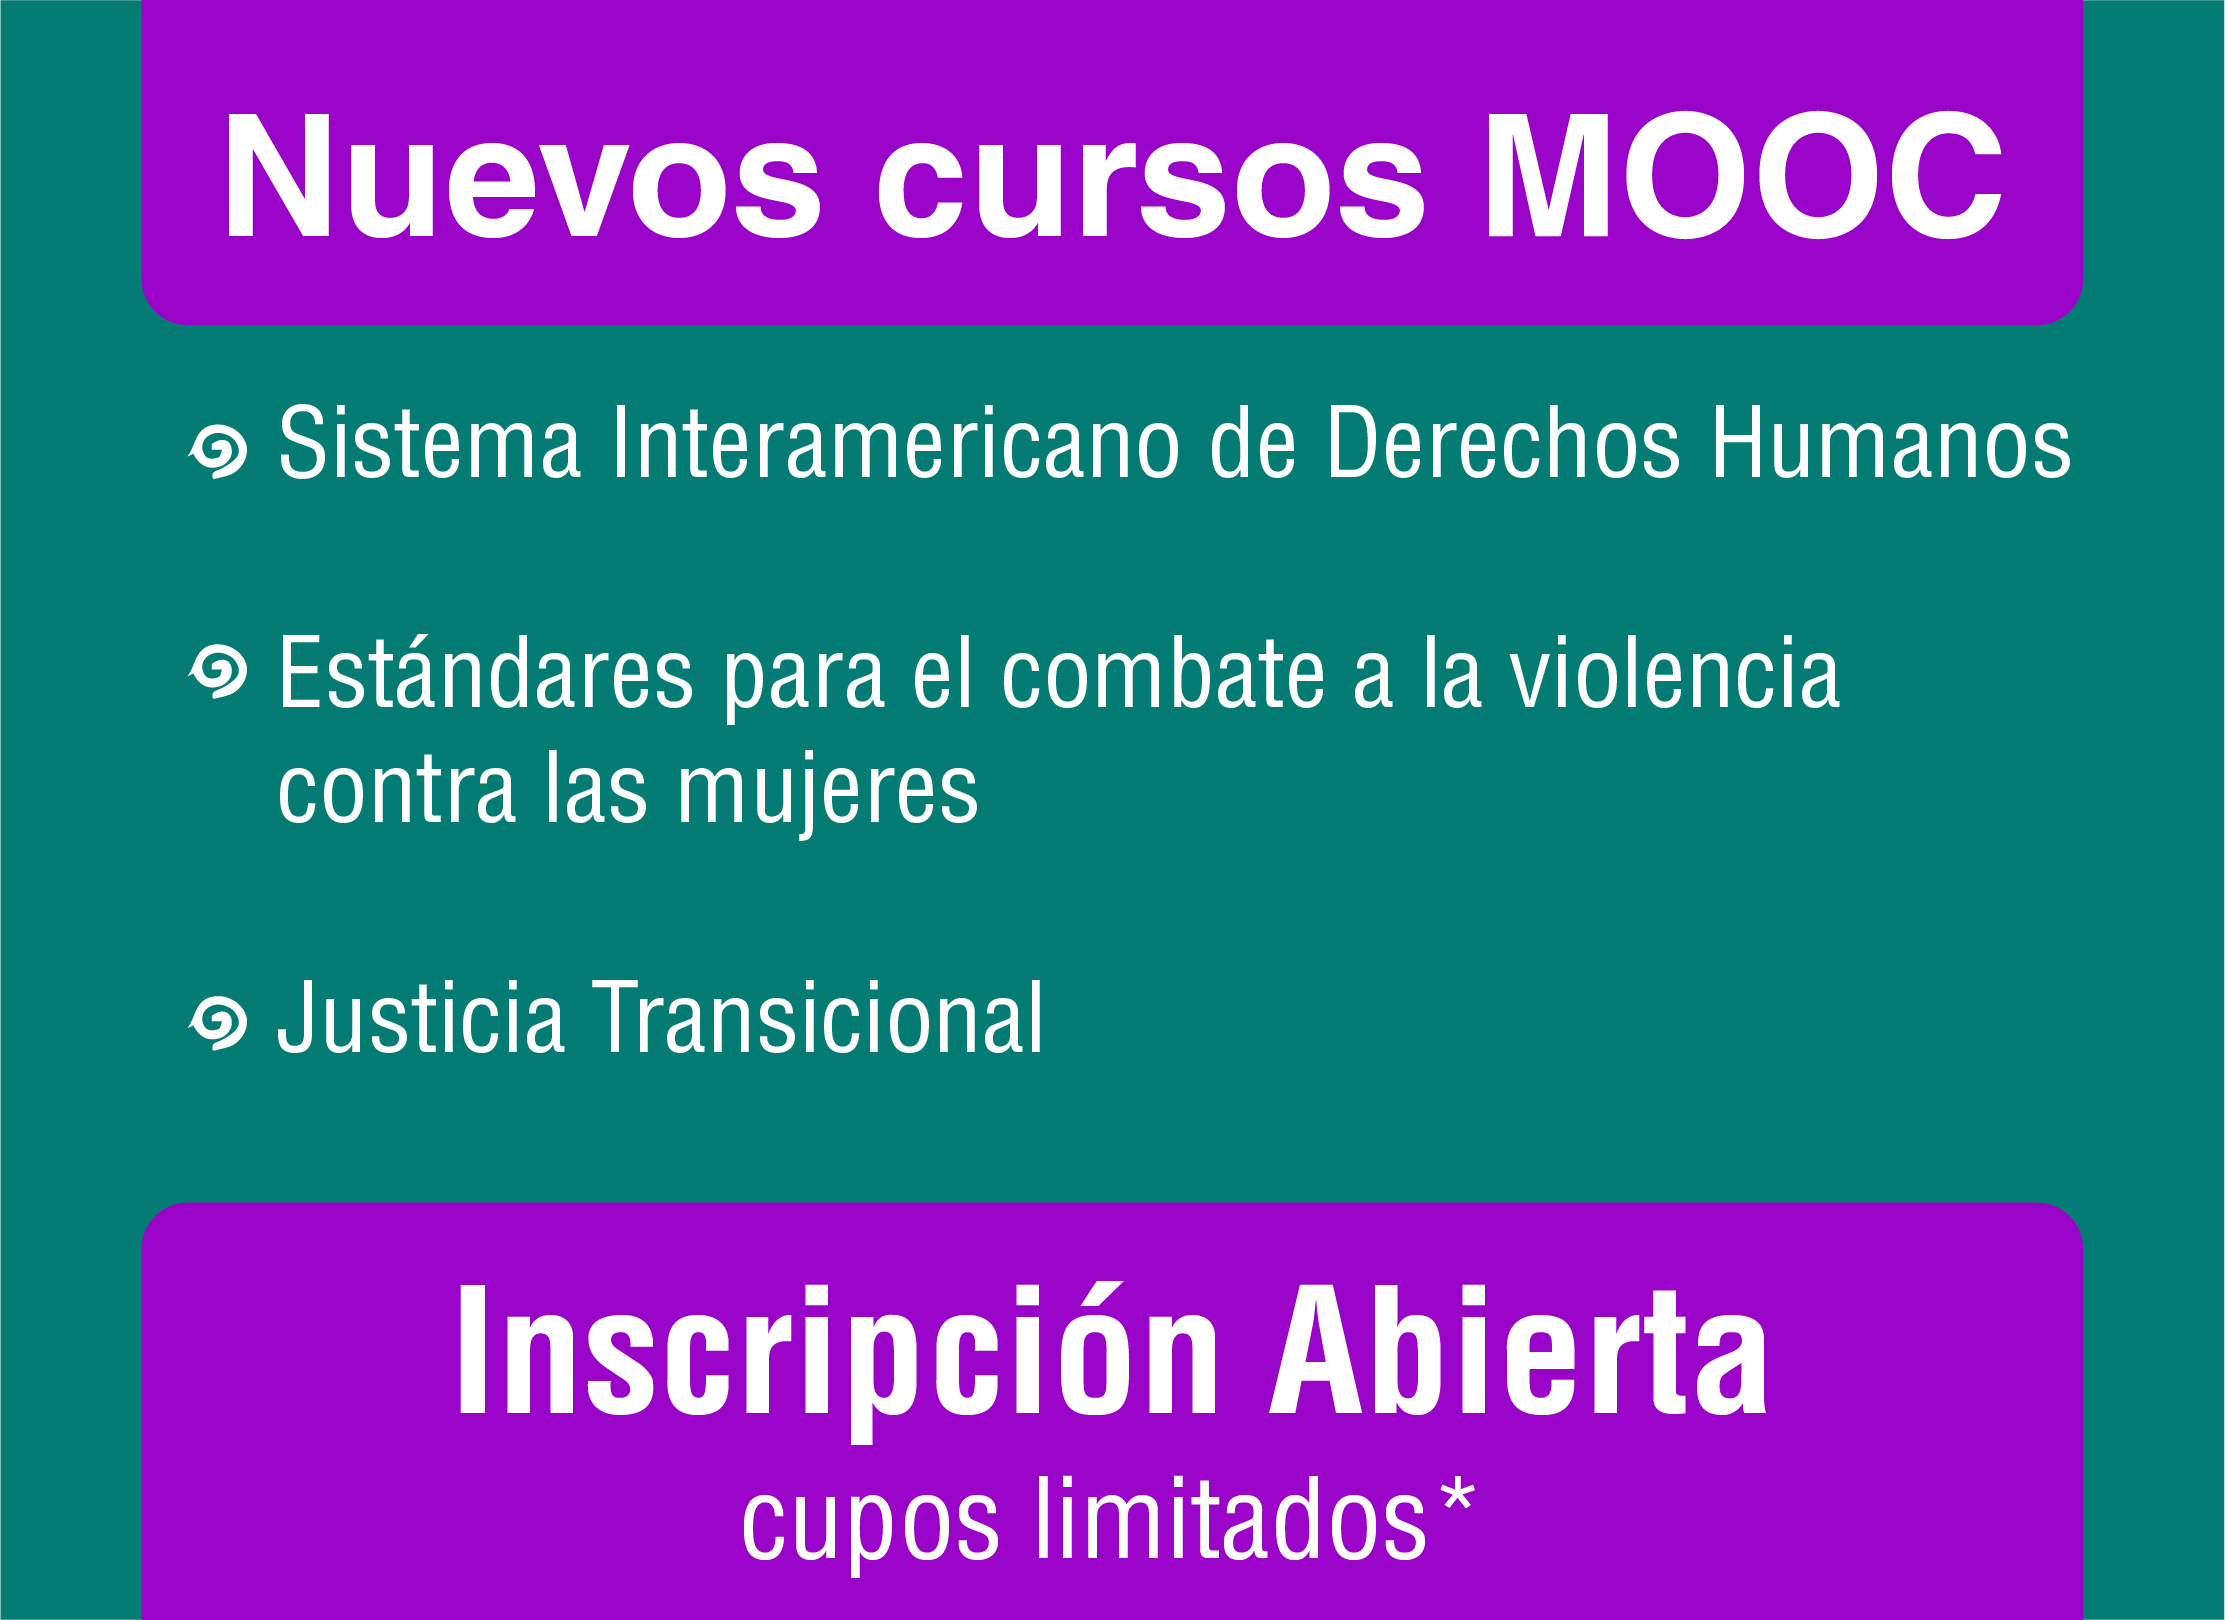 Cursos MOOC sobre el Sistema Interamericano de Derechos Humanos